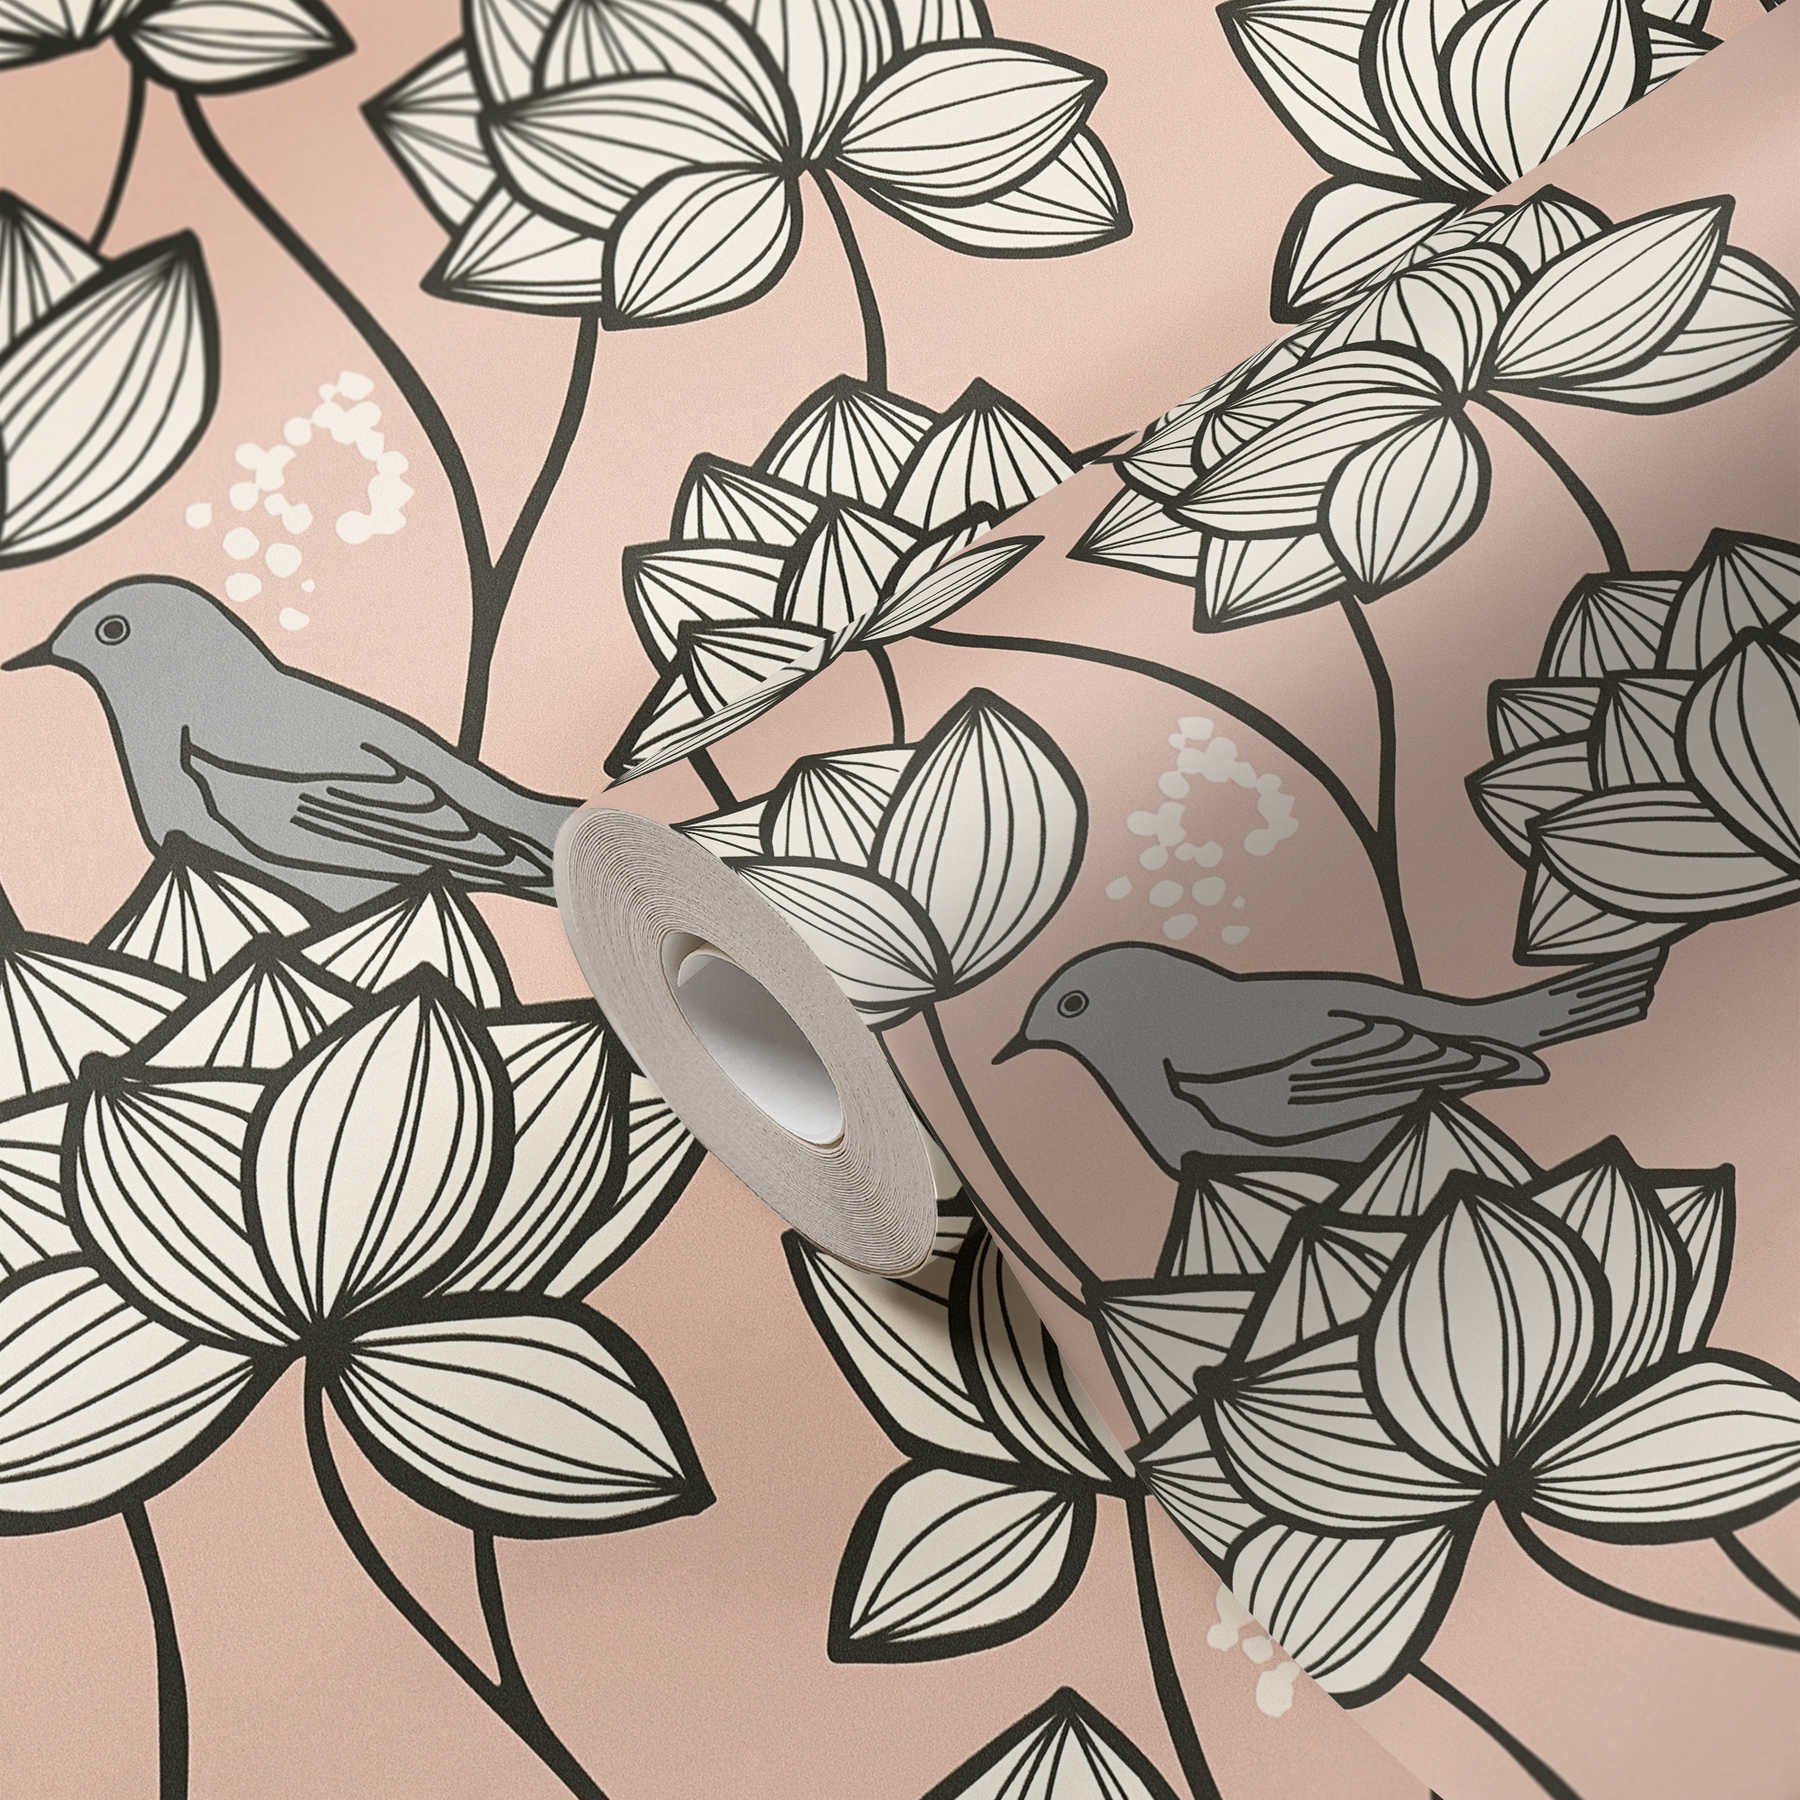             Vliesbehang bloemen ranken met vogels in line art stijl - grijs, roze
        